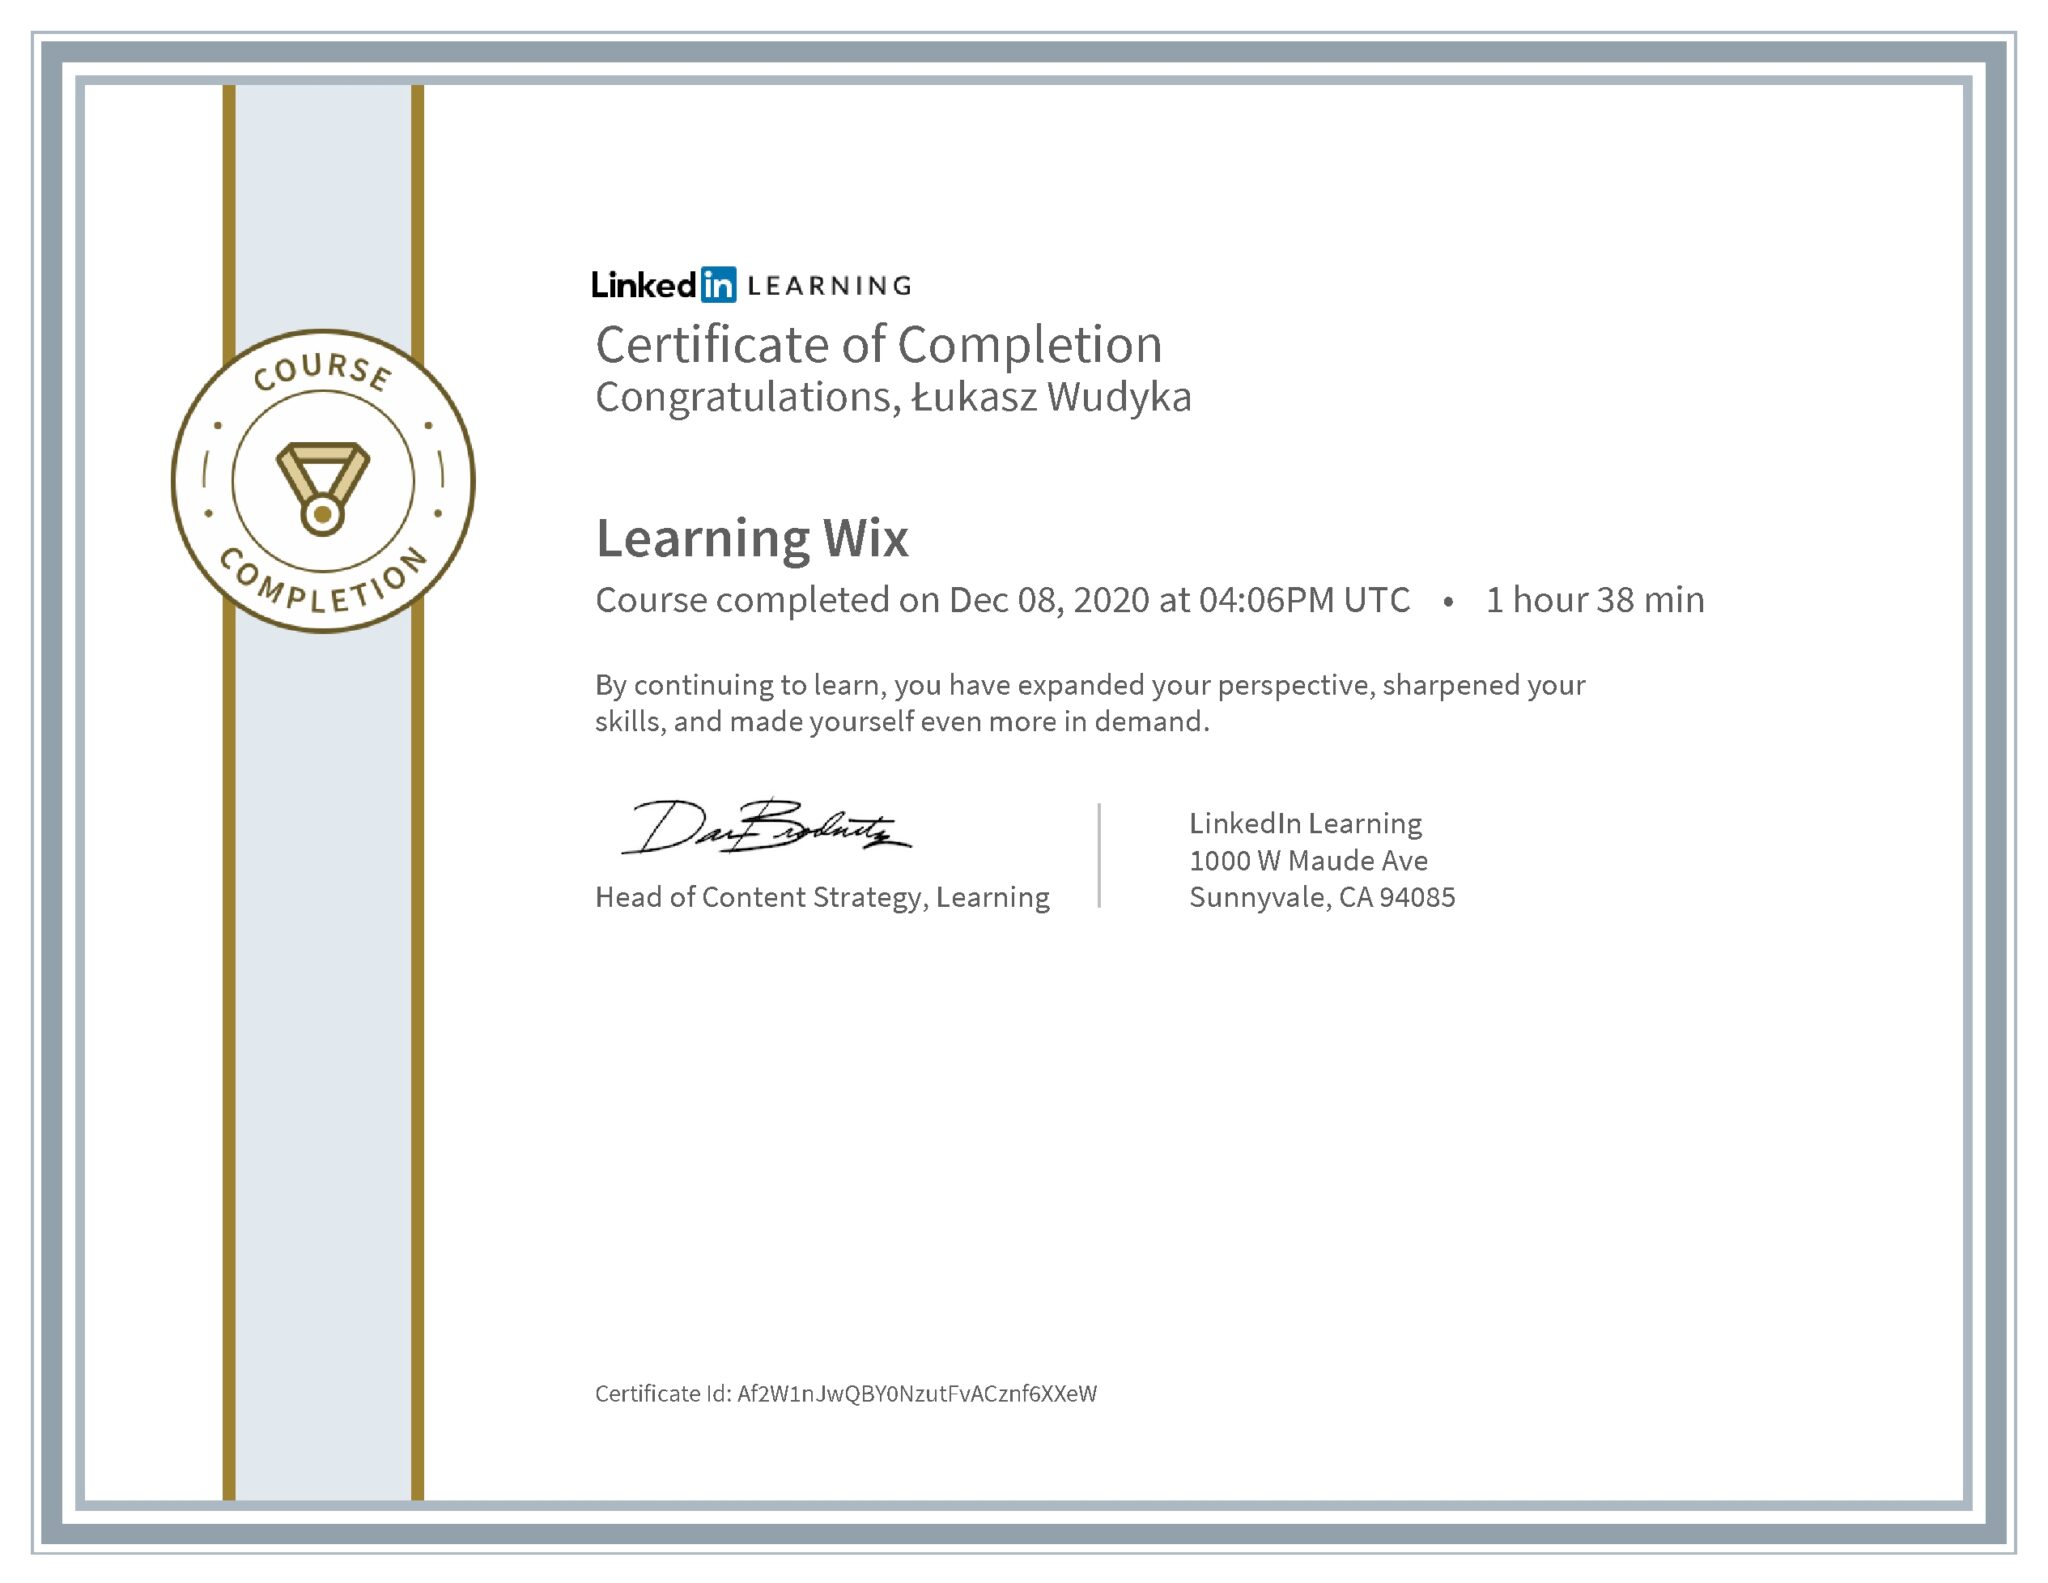 Łukasz Wudyka certyfikat LinkedIn Learning Wix